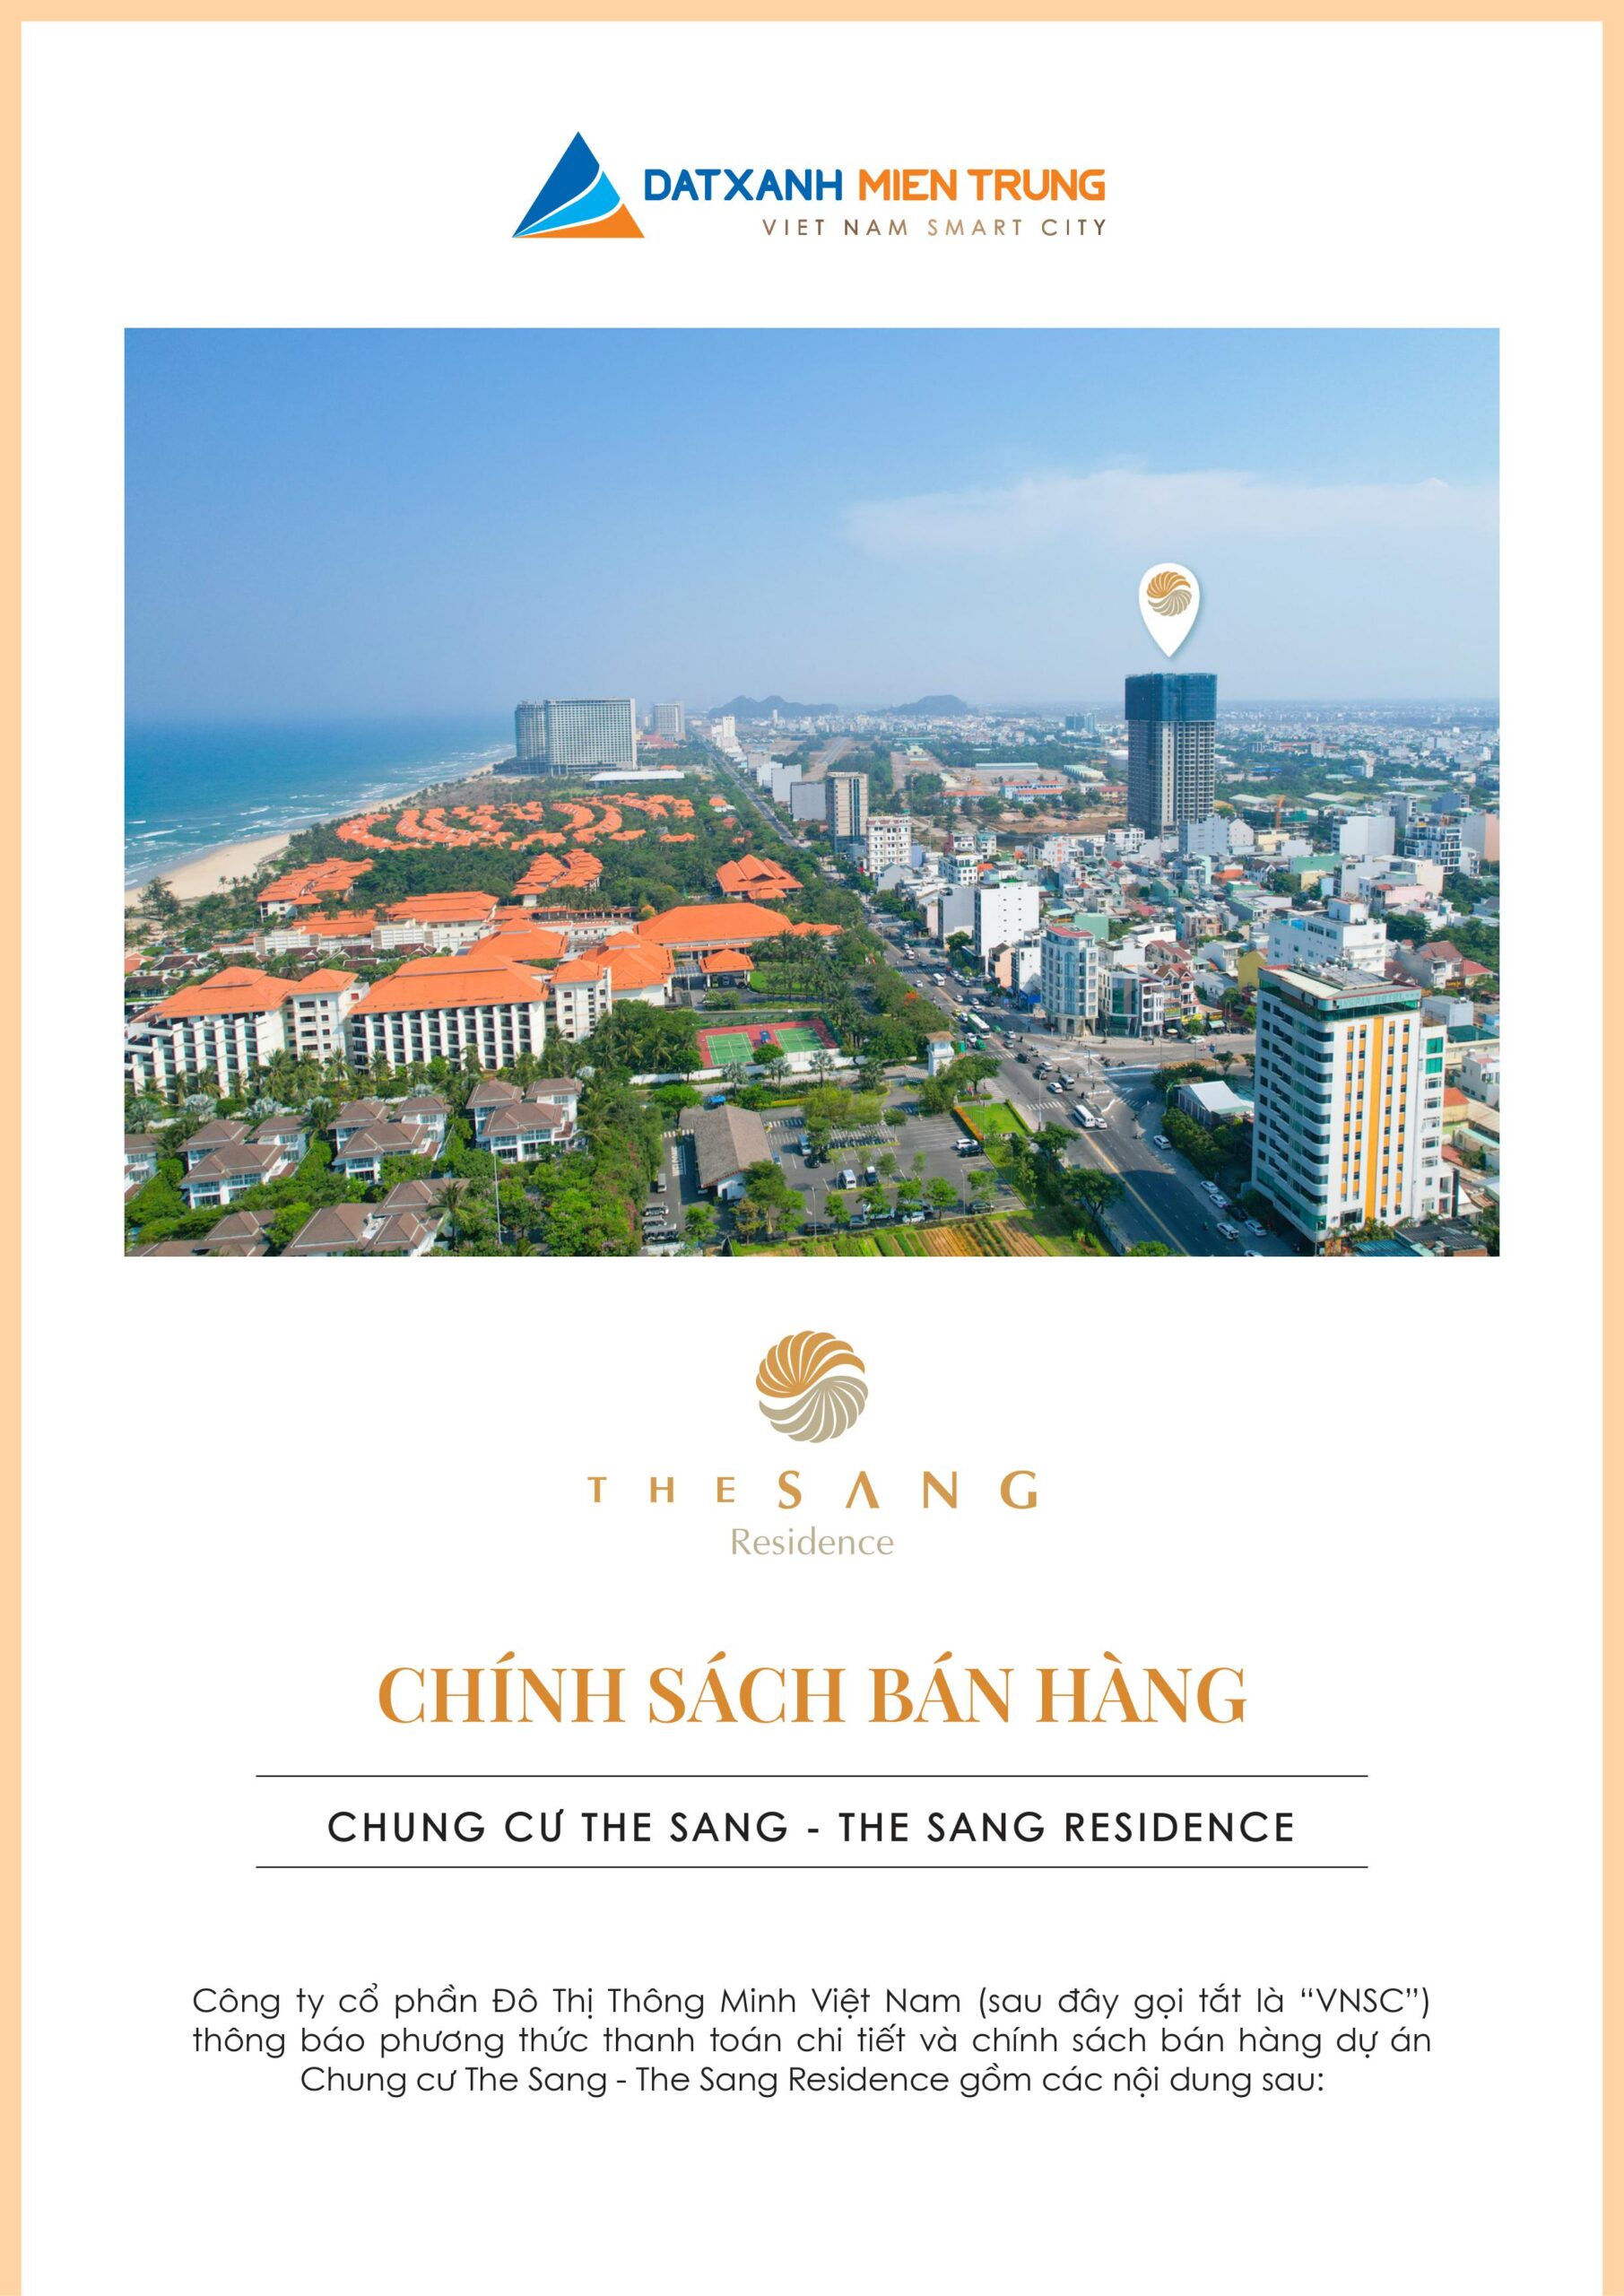 Chính sách bán hàng dự án The Sang Residence cập nhật mới nhất - Viet Nam Smart City